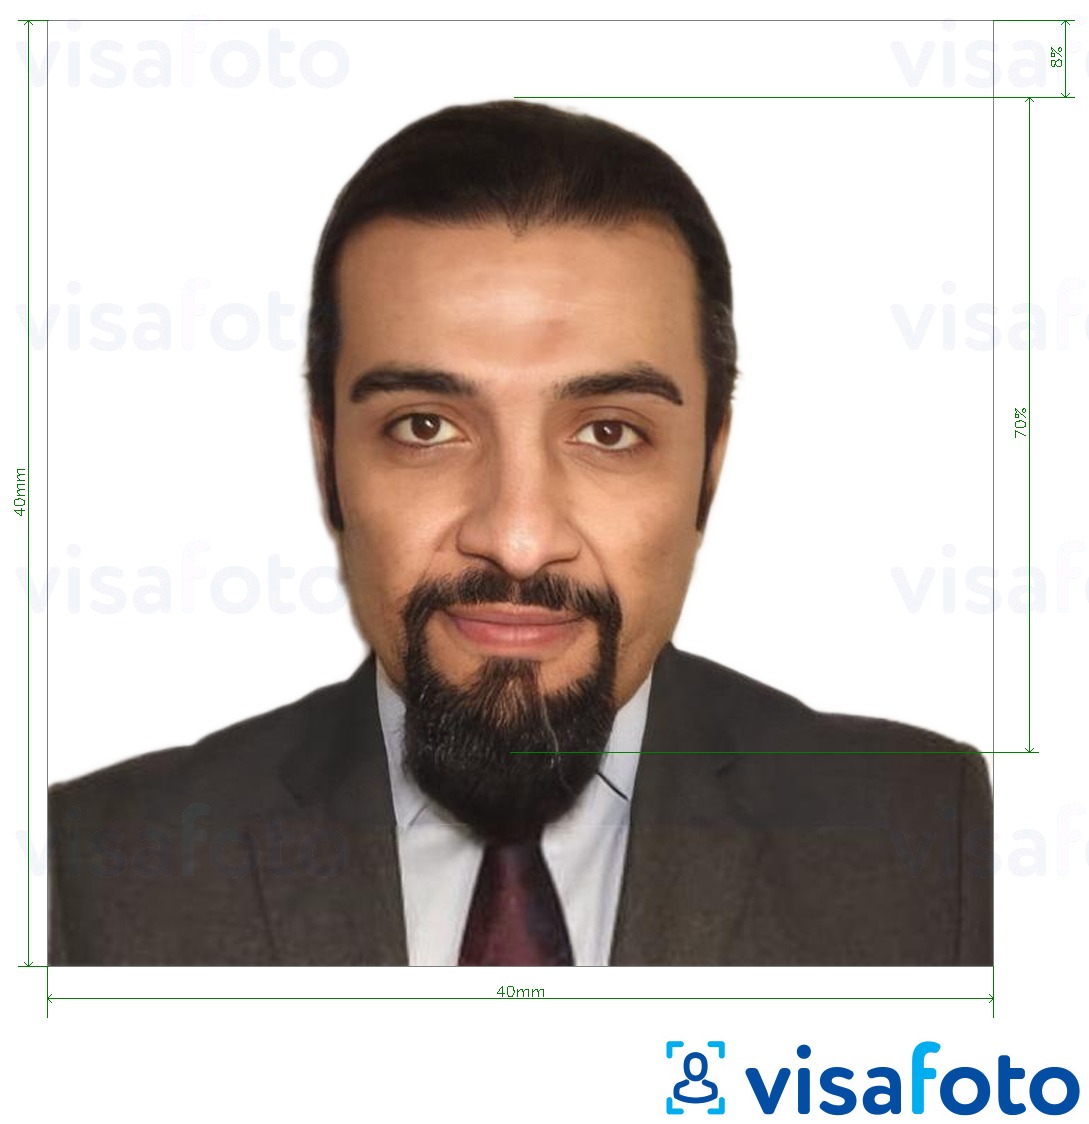 Primer fotografije za Sirijski potni list 40x40 mm z natančno specifikacijo velikosti